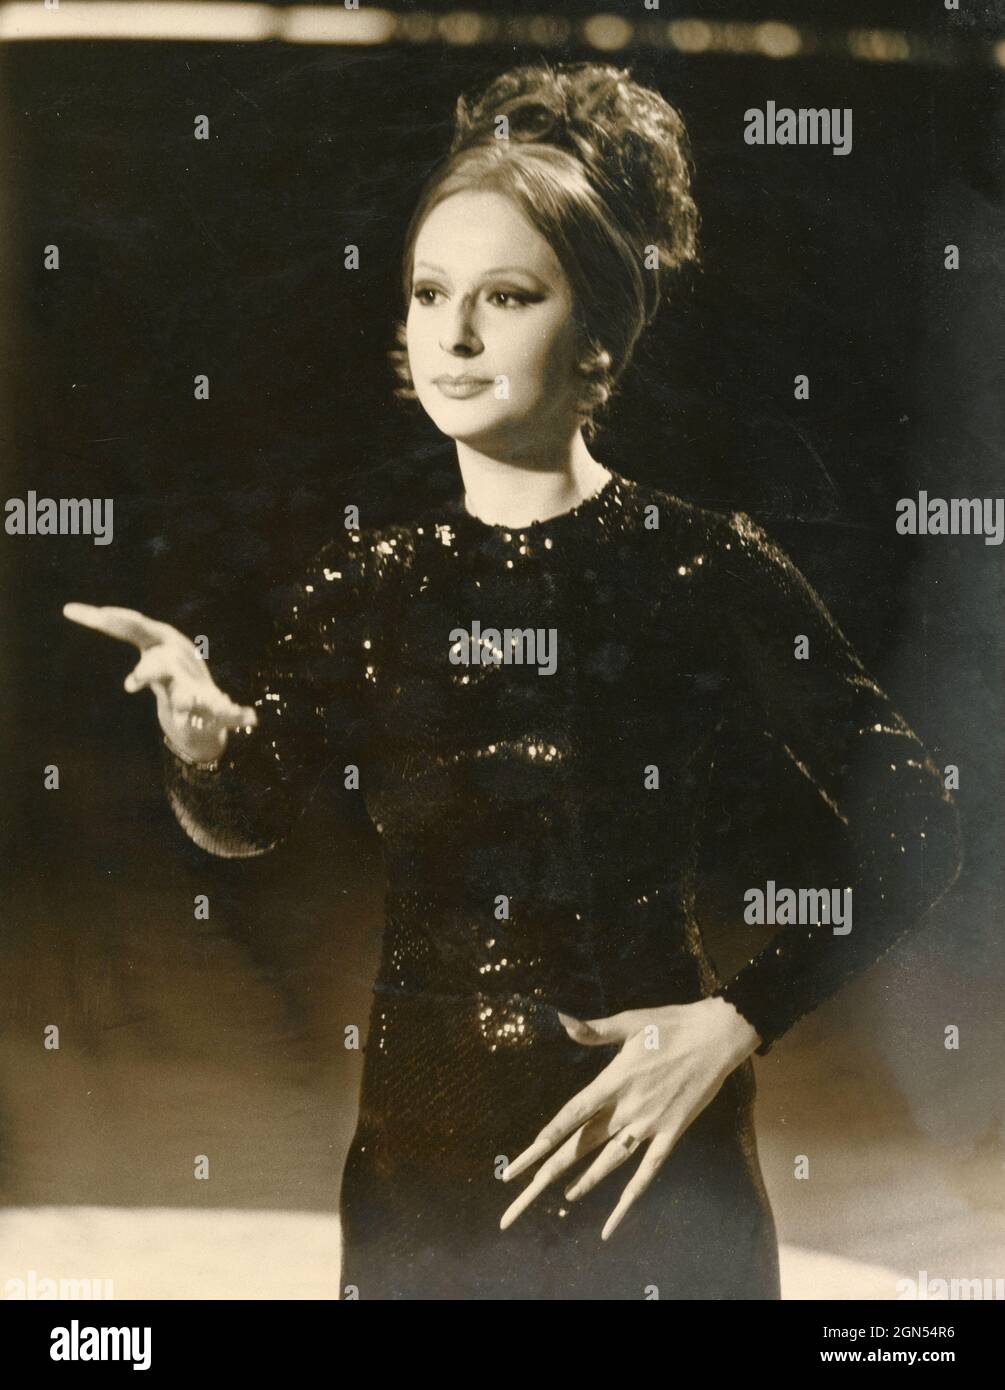 La actriz y imitadora italiana Loretta Goggi interpreta a Barbara Straisand en el programa de televisión Canzonissima, 1972 Foto de stock